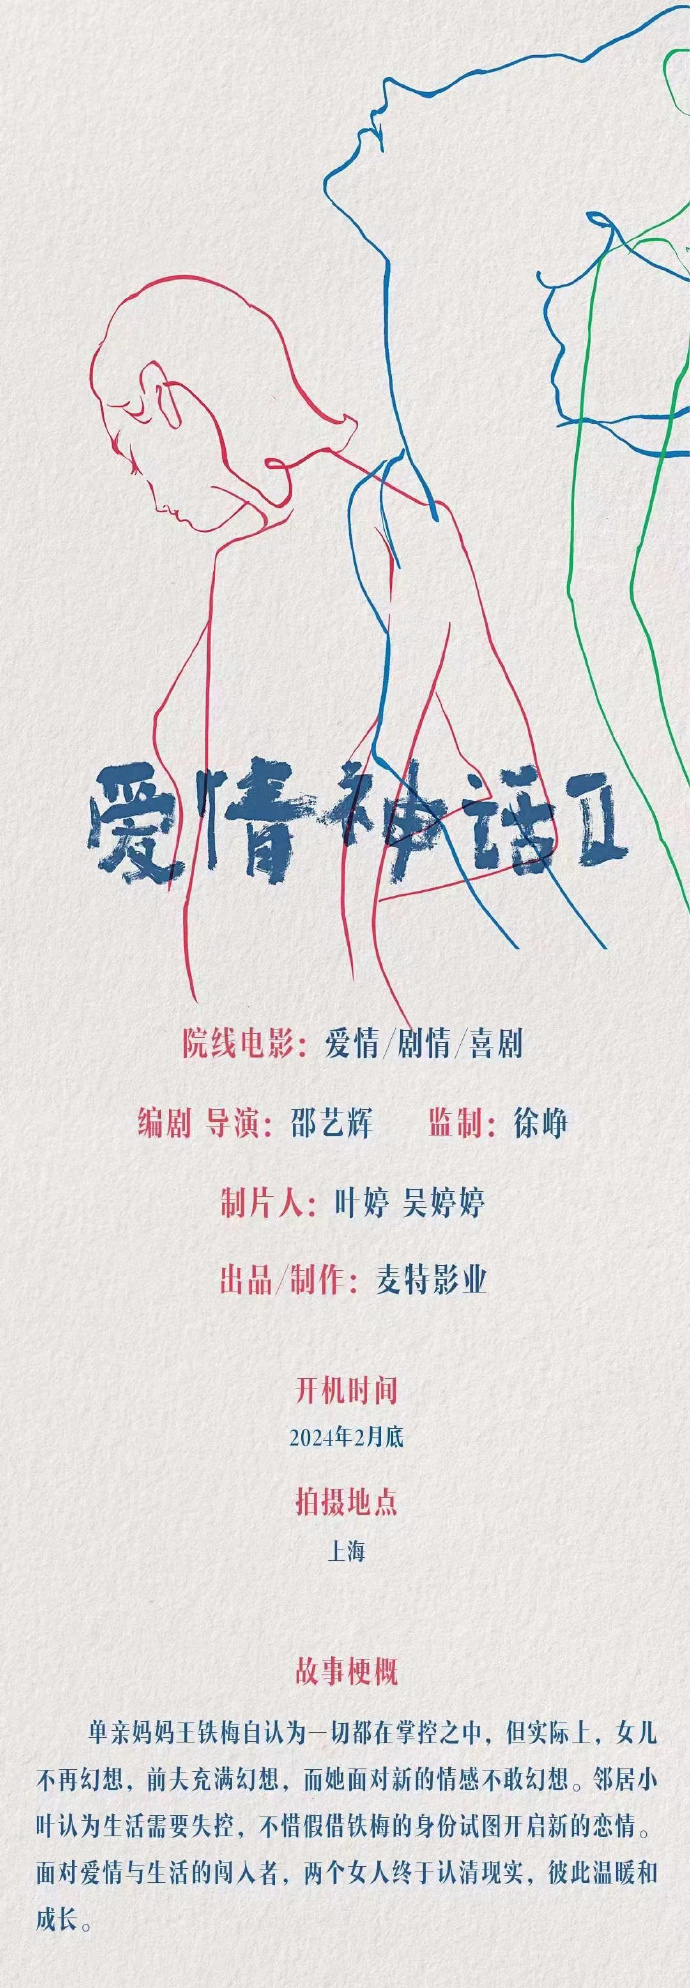 《爱情神话2》计划明年2月上海开拍 邵艺辉执导